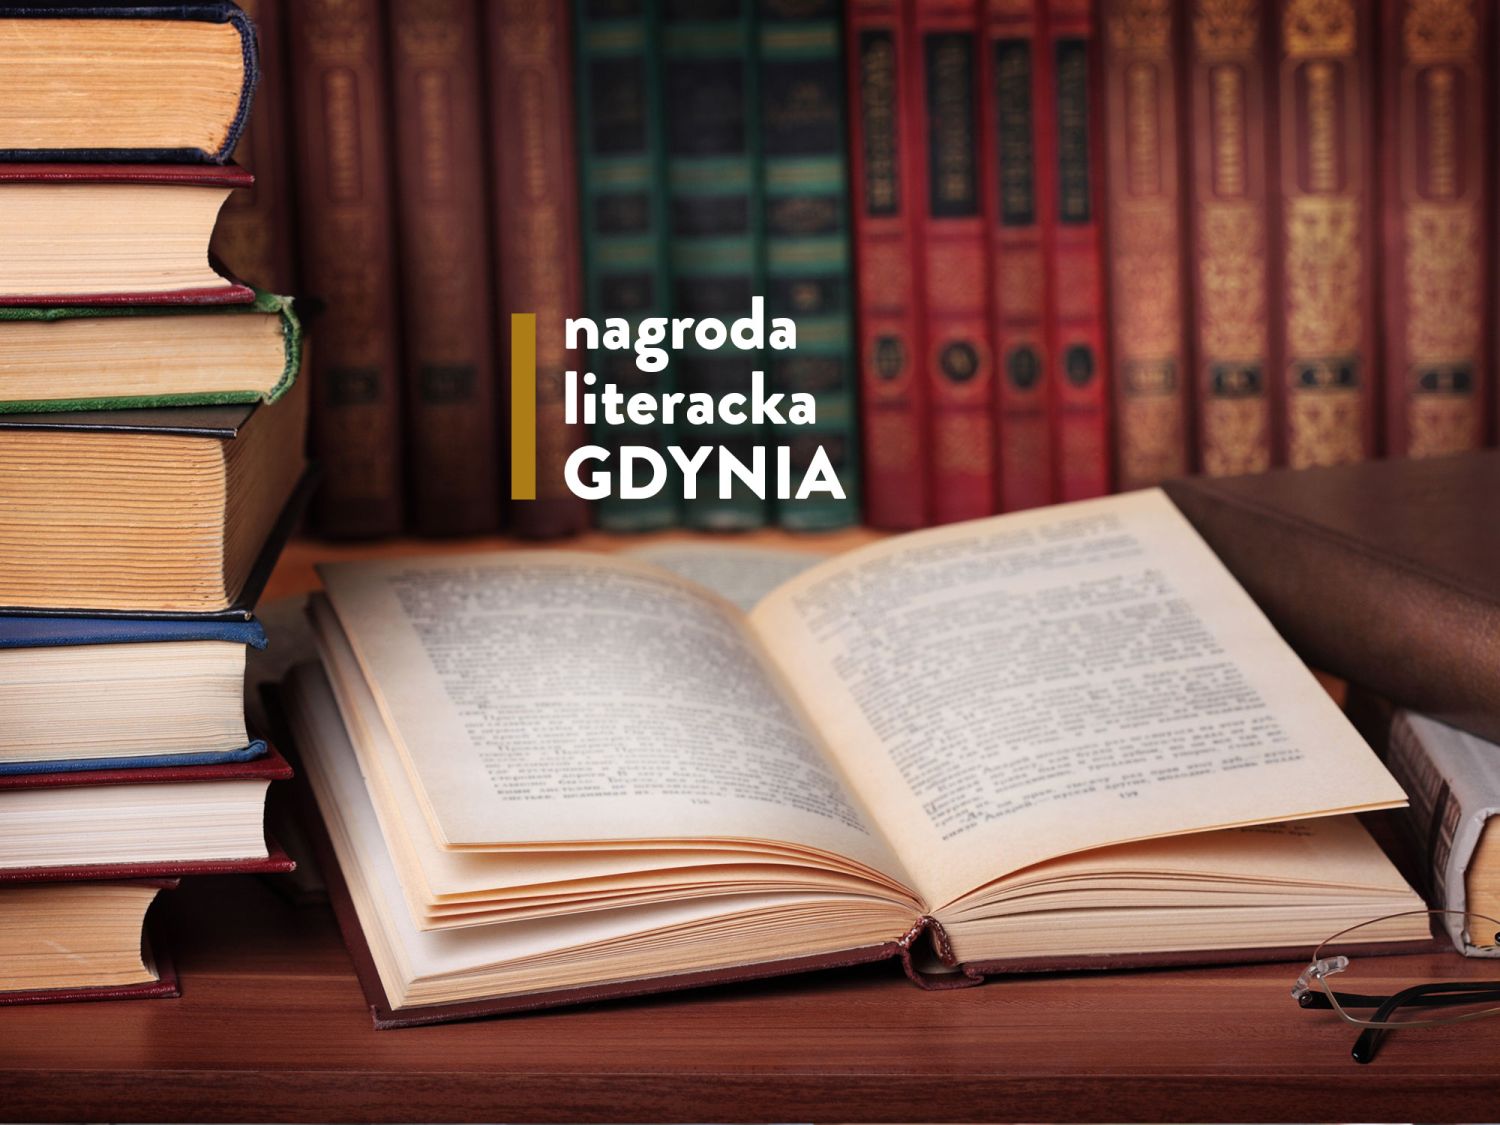 Nagroda Literacka Gdynia – kto może się ubiegać o jej otrzymanie i w jakich kategoriach jest przyznawana?